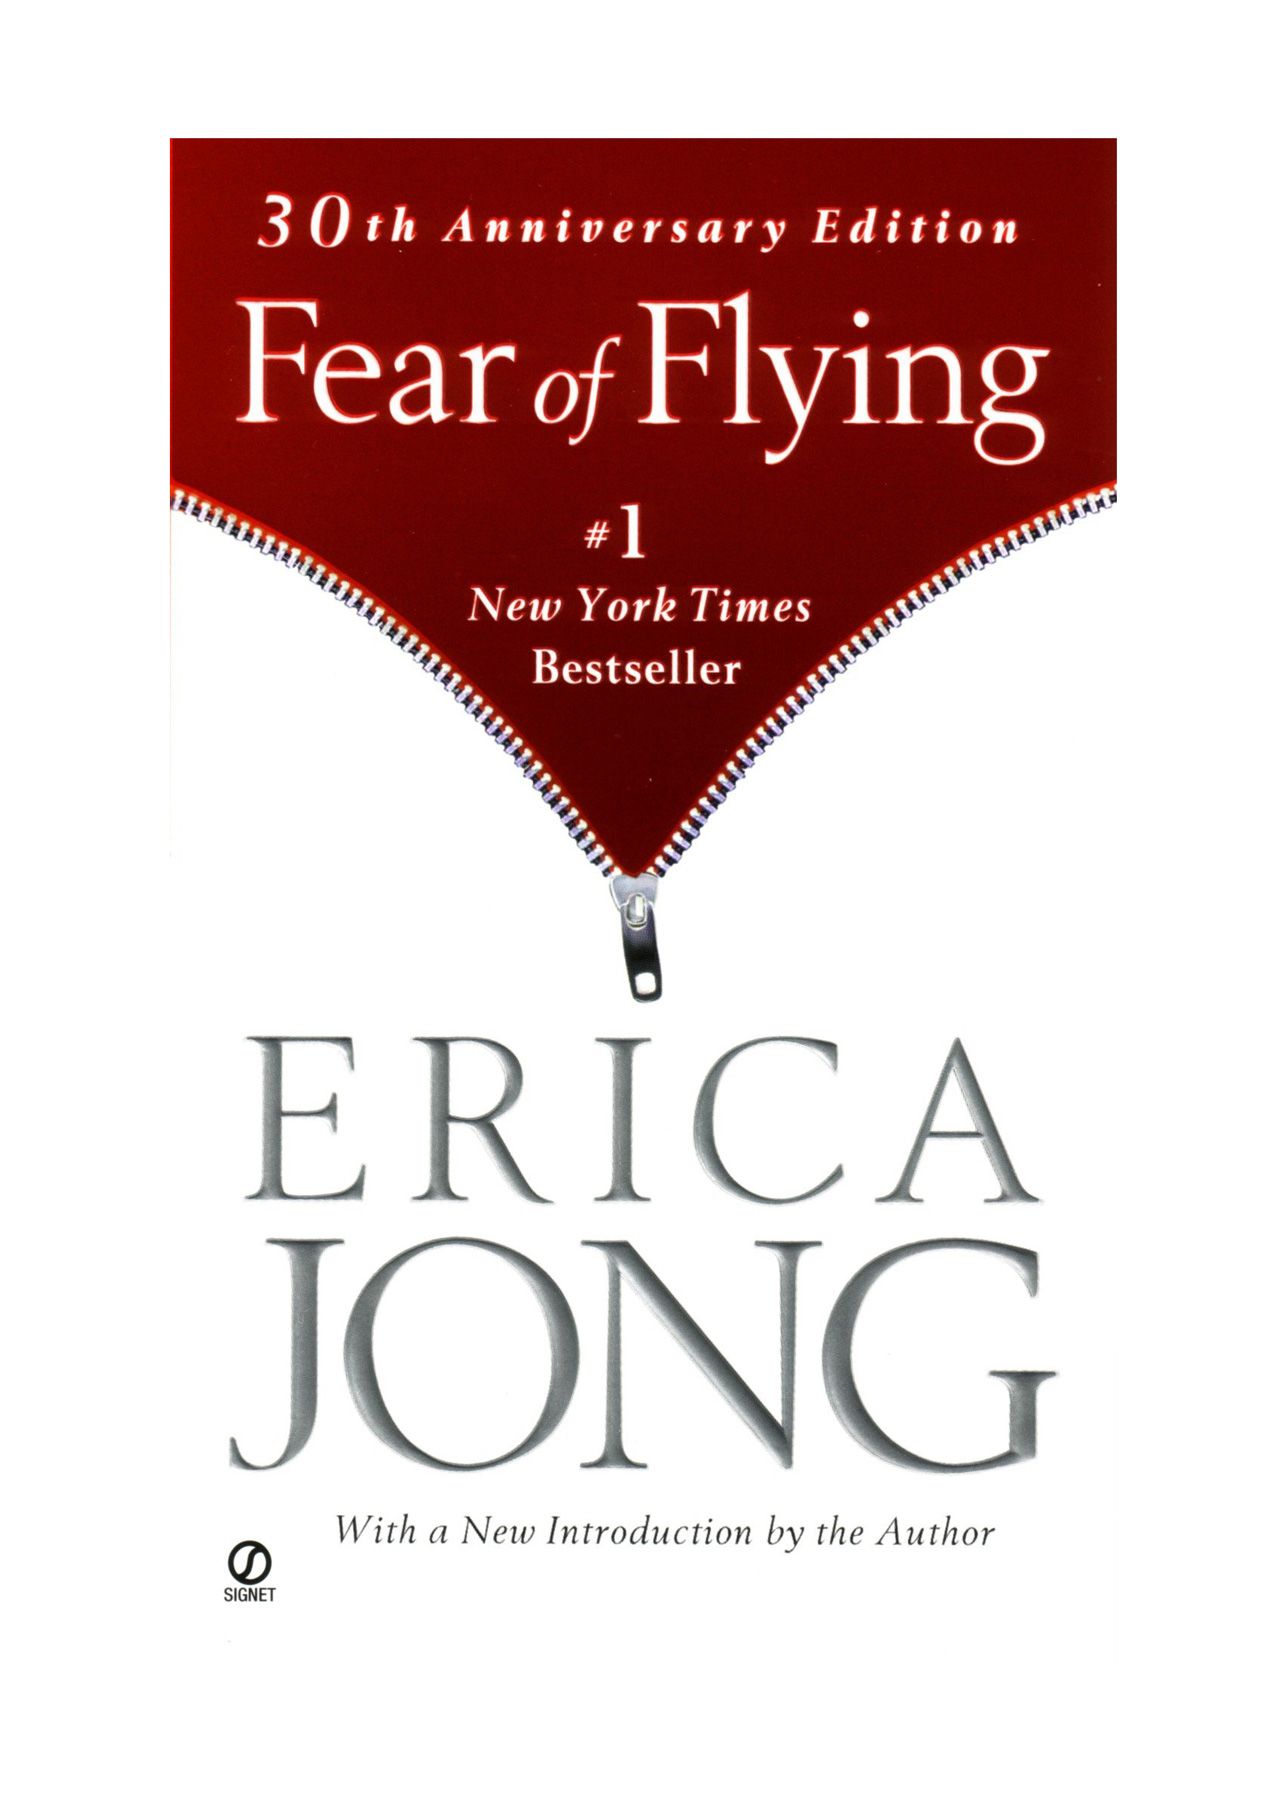 კარგი წიგნები 20 წლის ასაკში წასაკითხად: ერიკა ჯონგის „ფრენის შიში“.